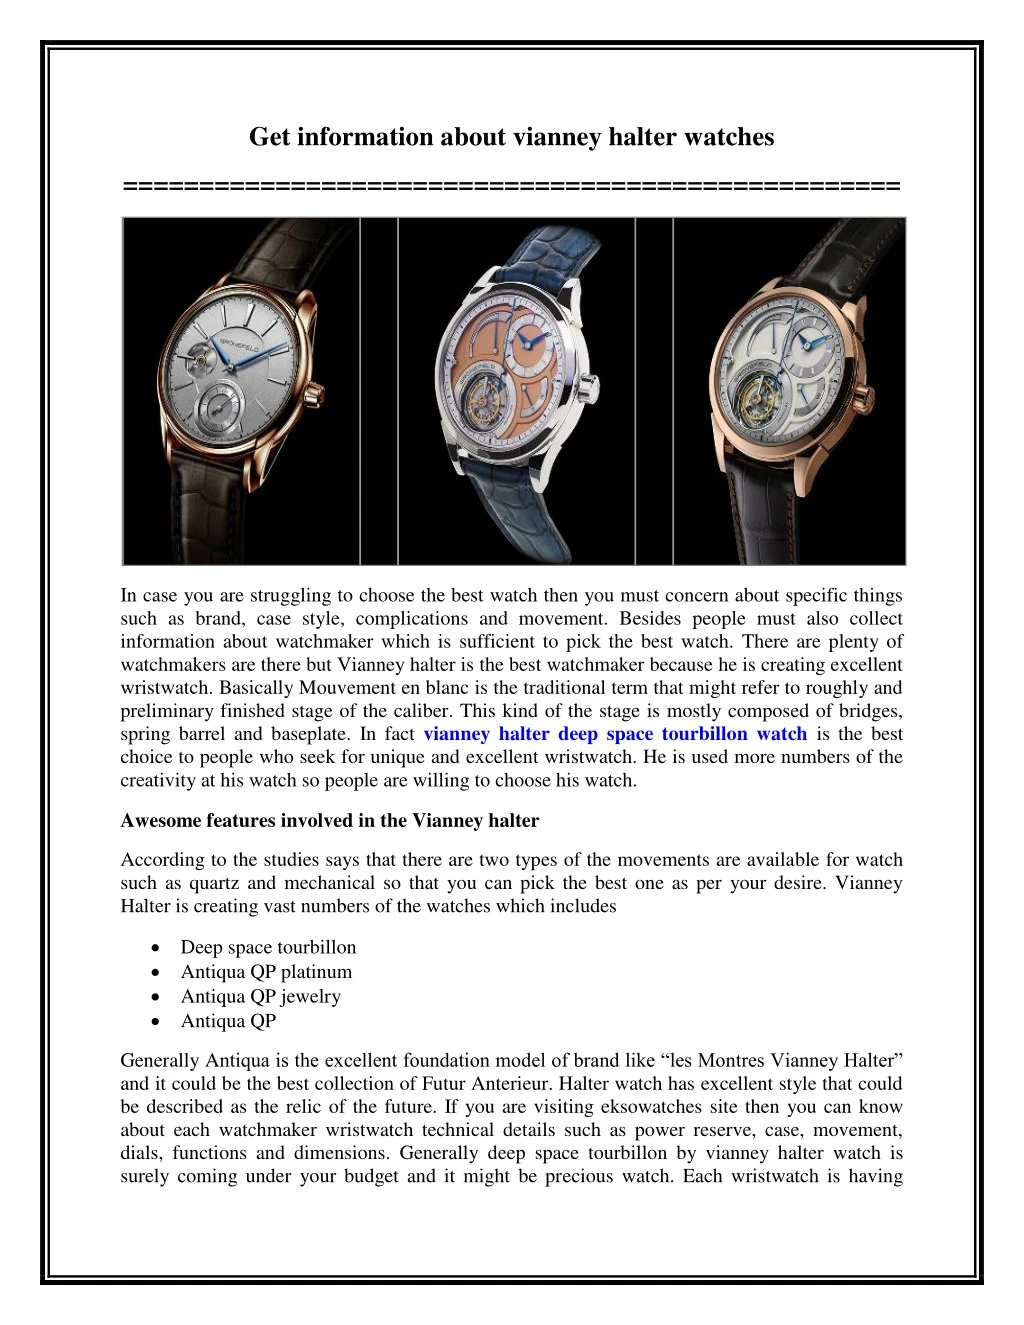 get information about vianney halter watches